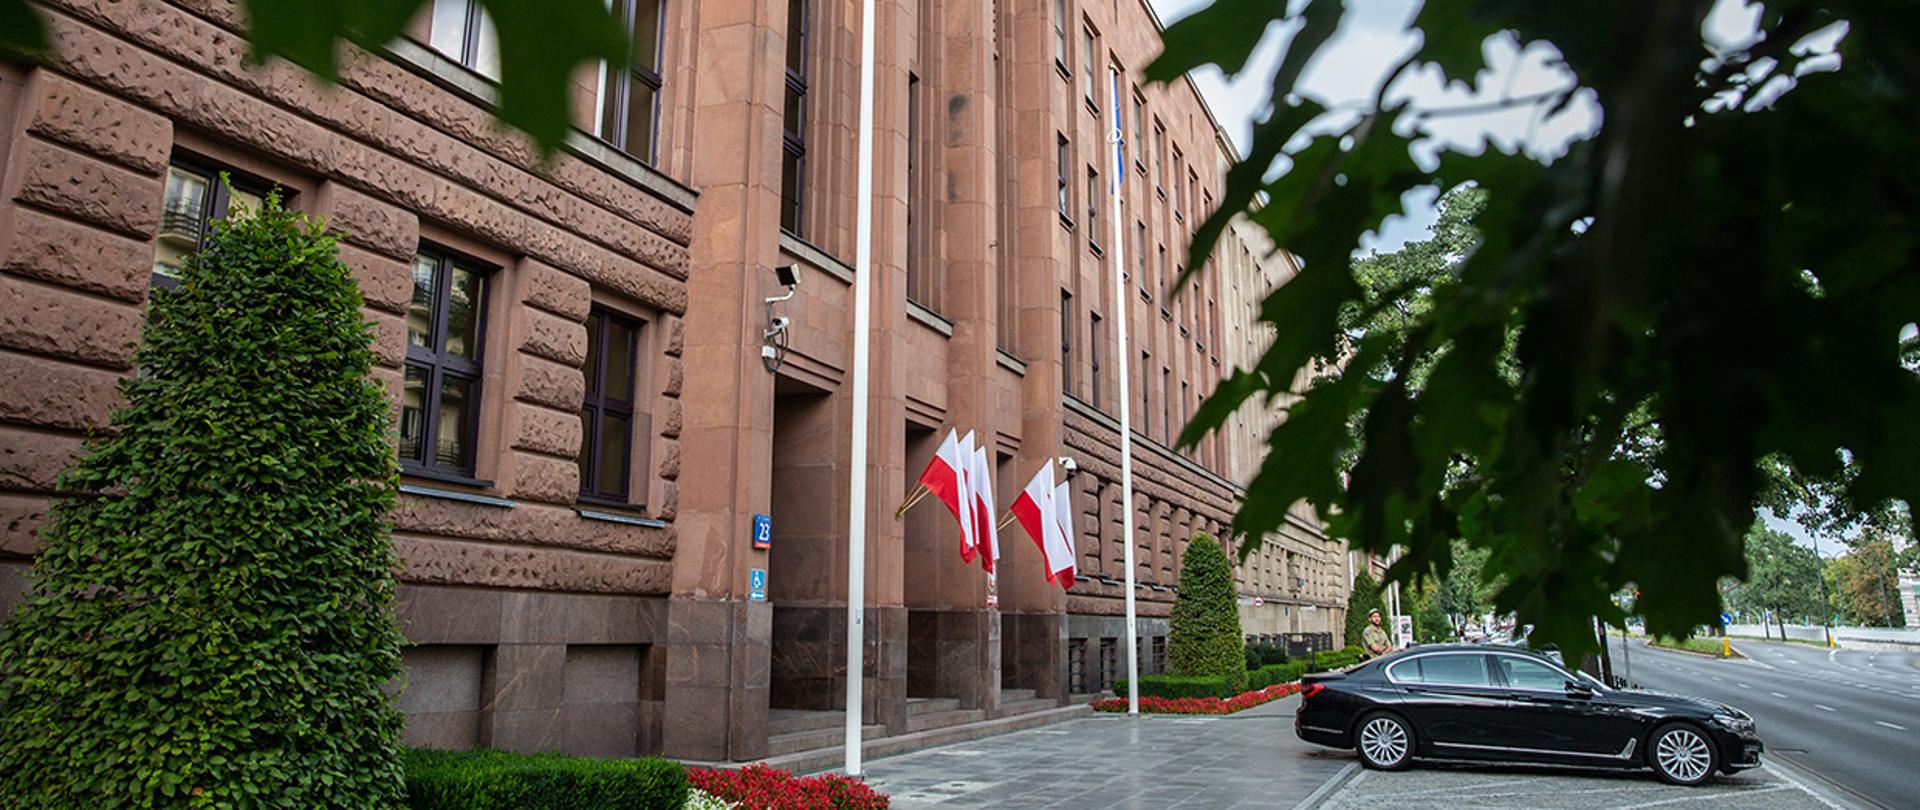 2018.08.03 Warszawa . Budynek MSZ , ilustracje .
Fot. Tymon Markowski / MSZ